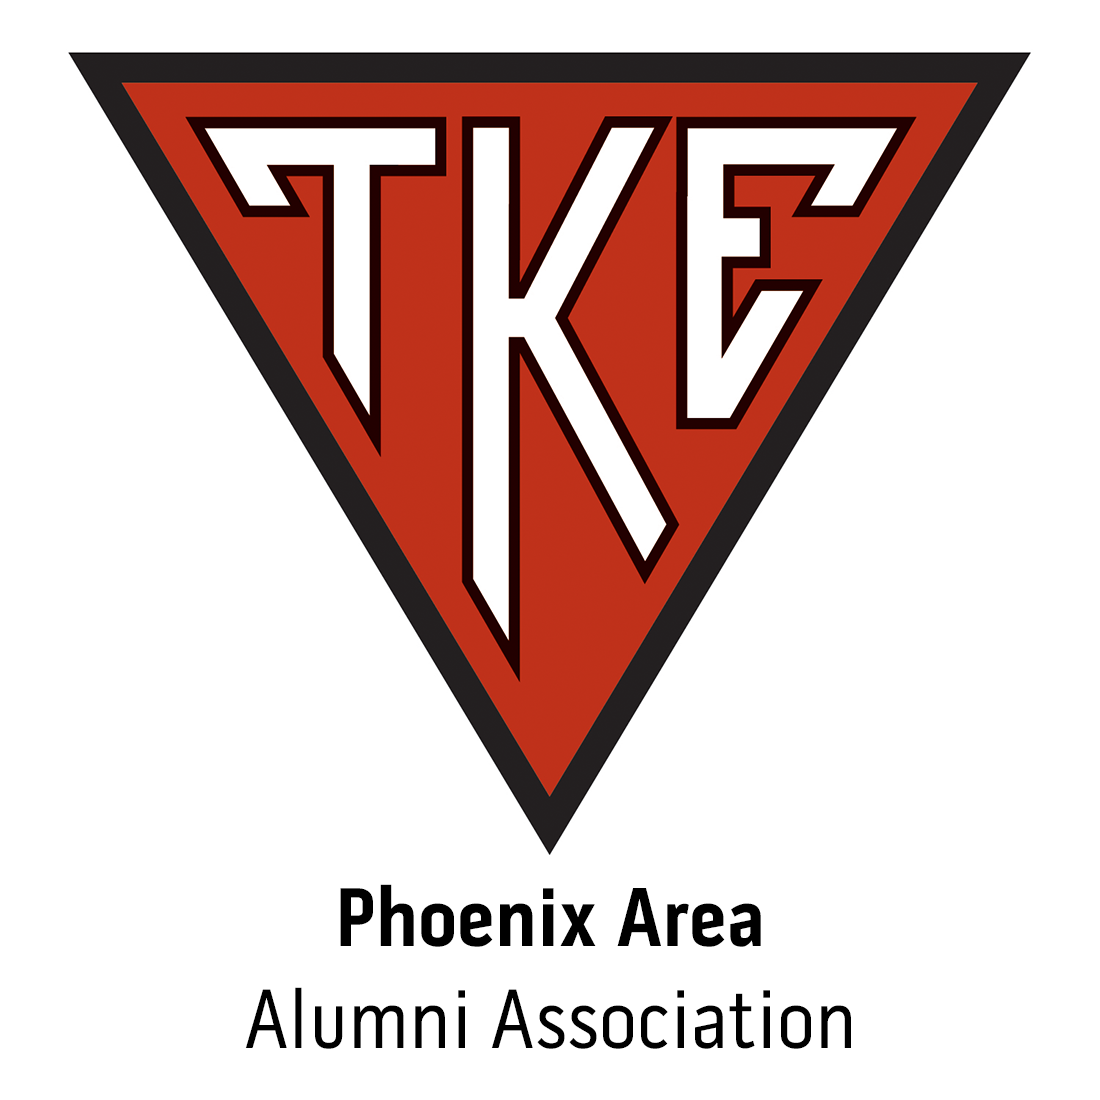 Phoenix Alumni Association for Phoenix, AZ